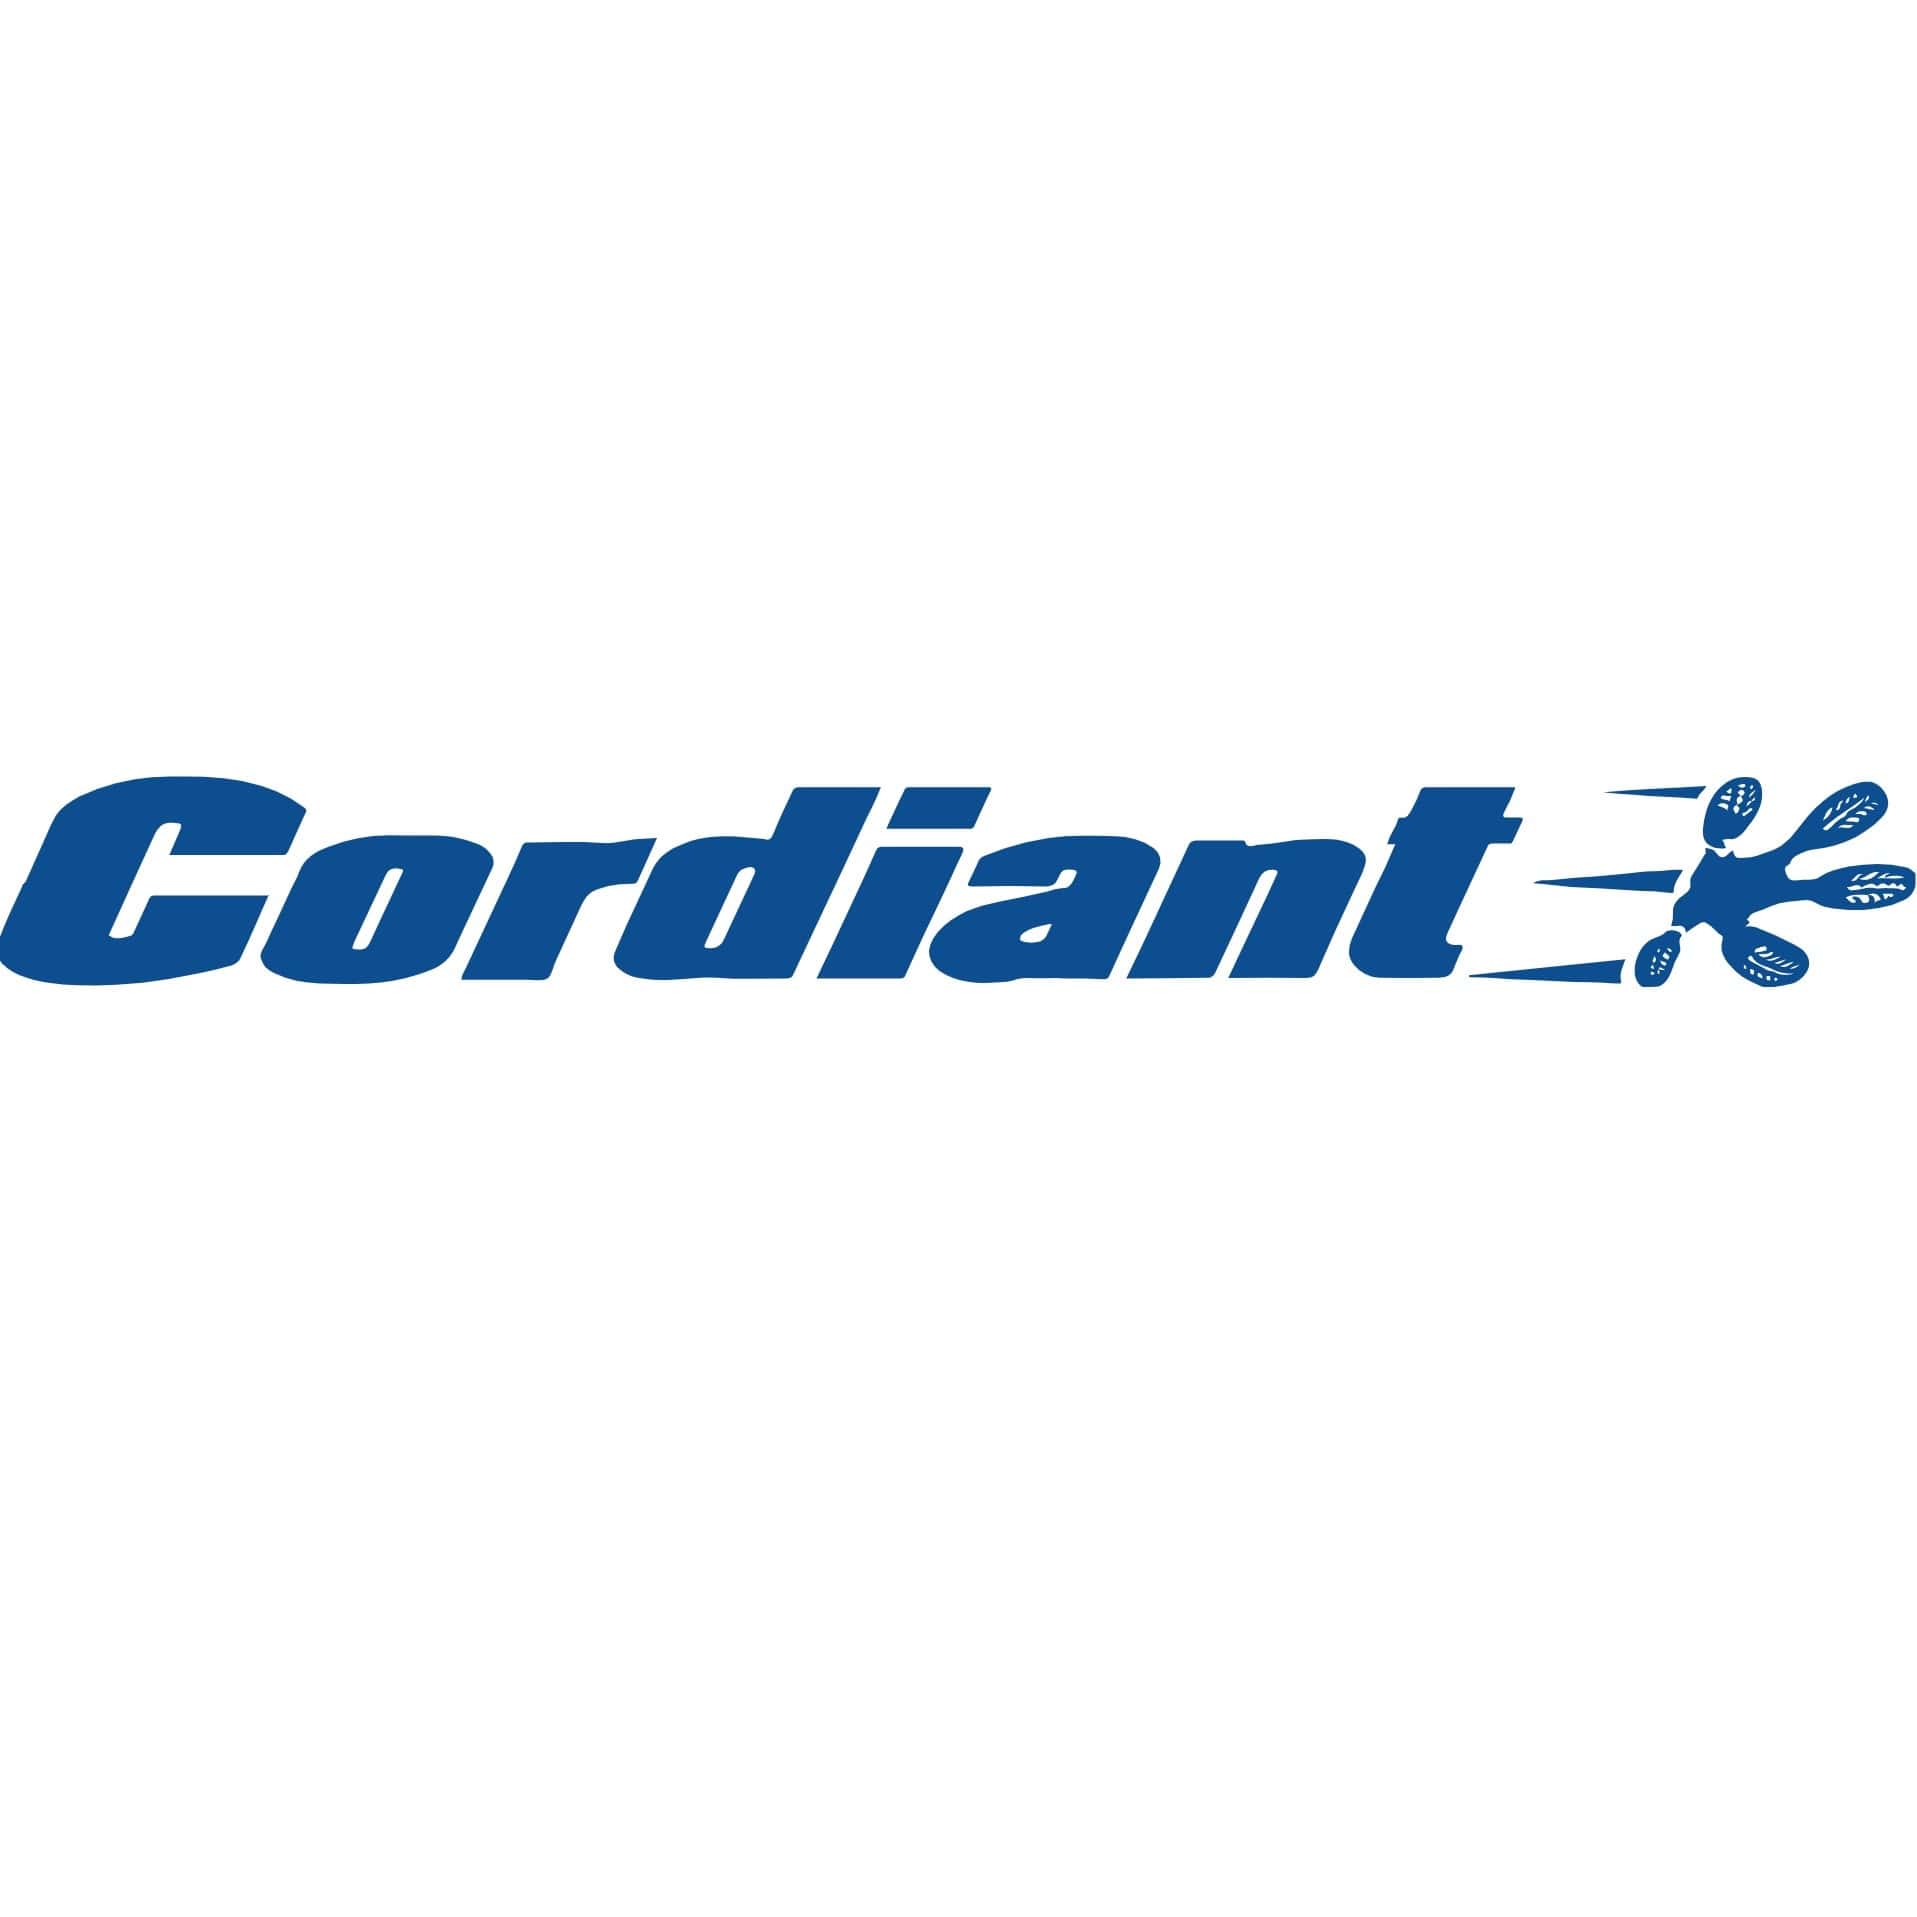 Cordiant logo